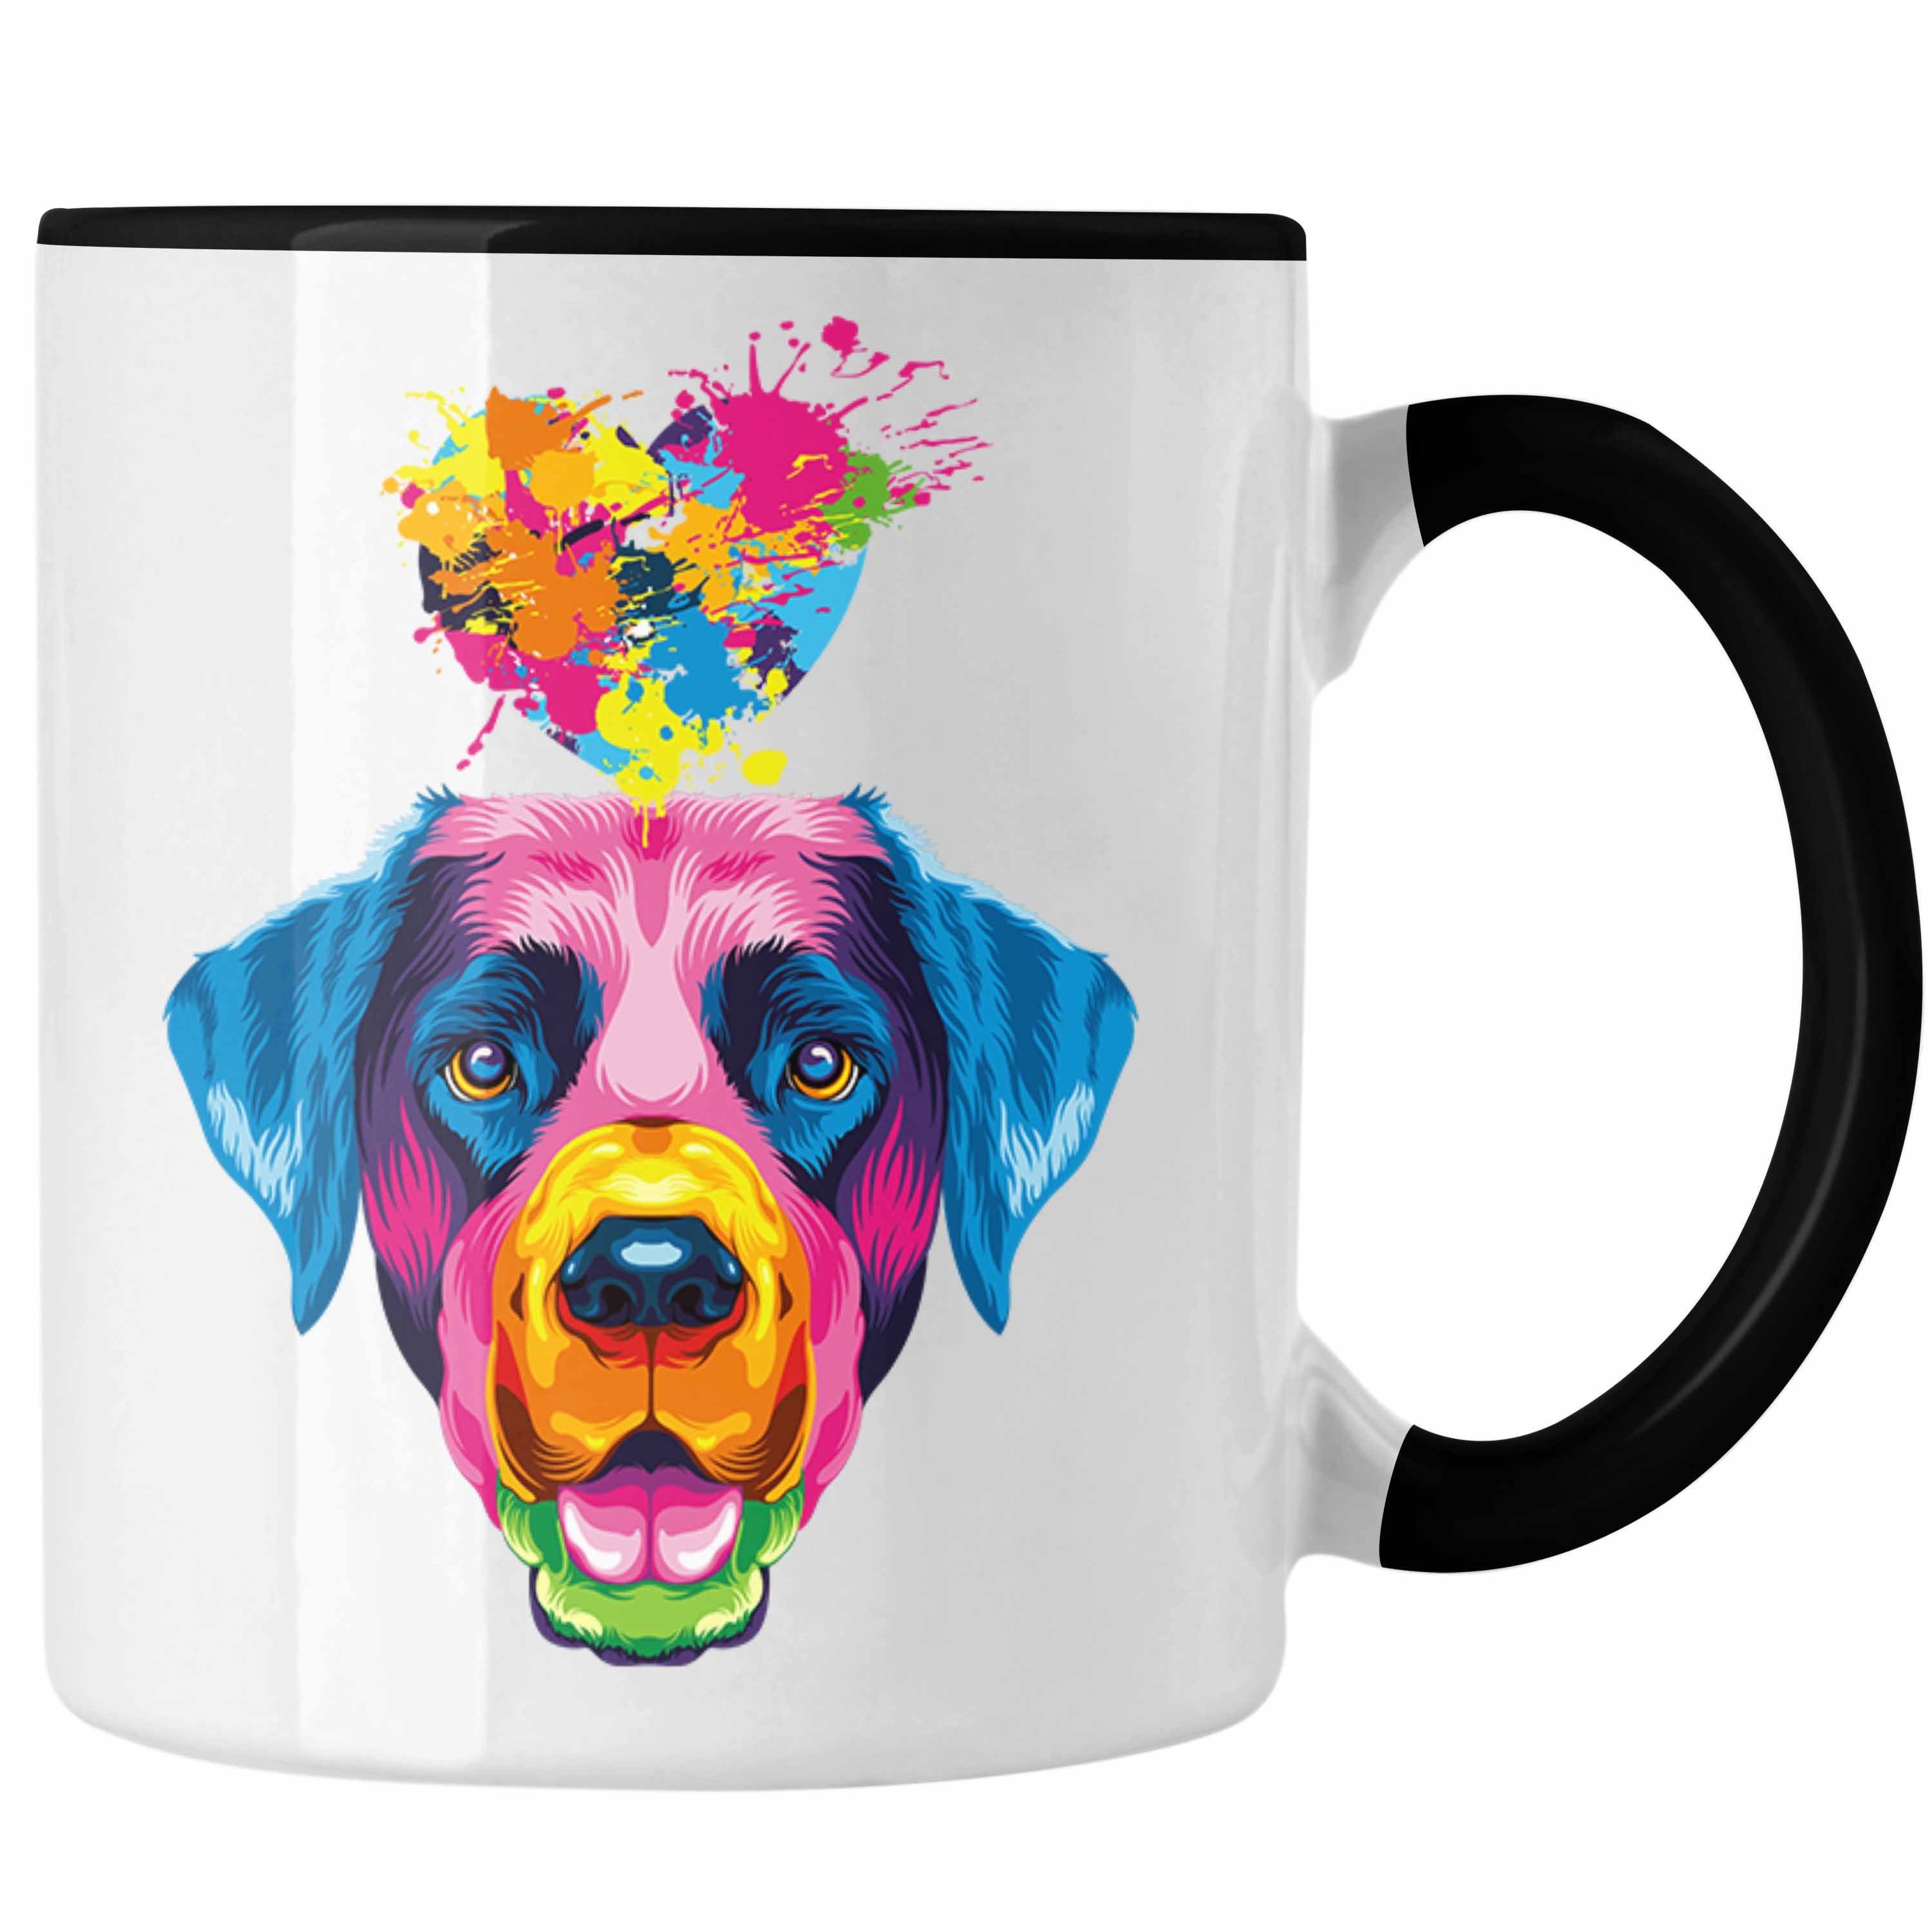 Trendation Herz Schwarz Tasse Lustiger Geschenk Farbe Geschenkid Spruch Labrador Tasse Besitzer